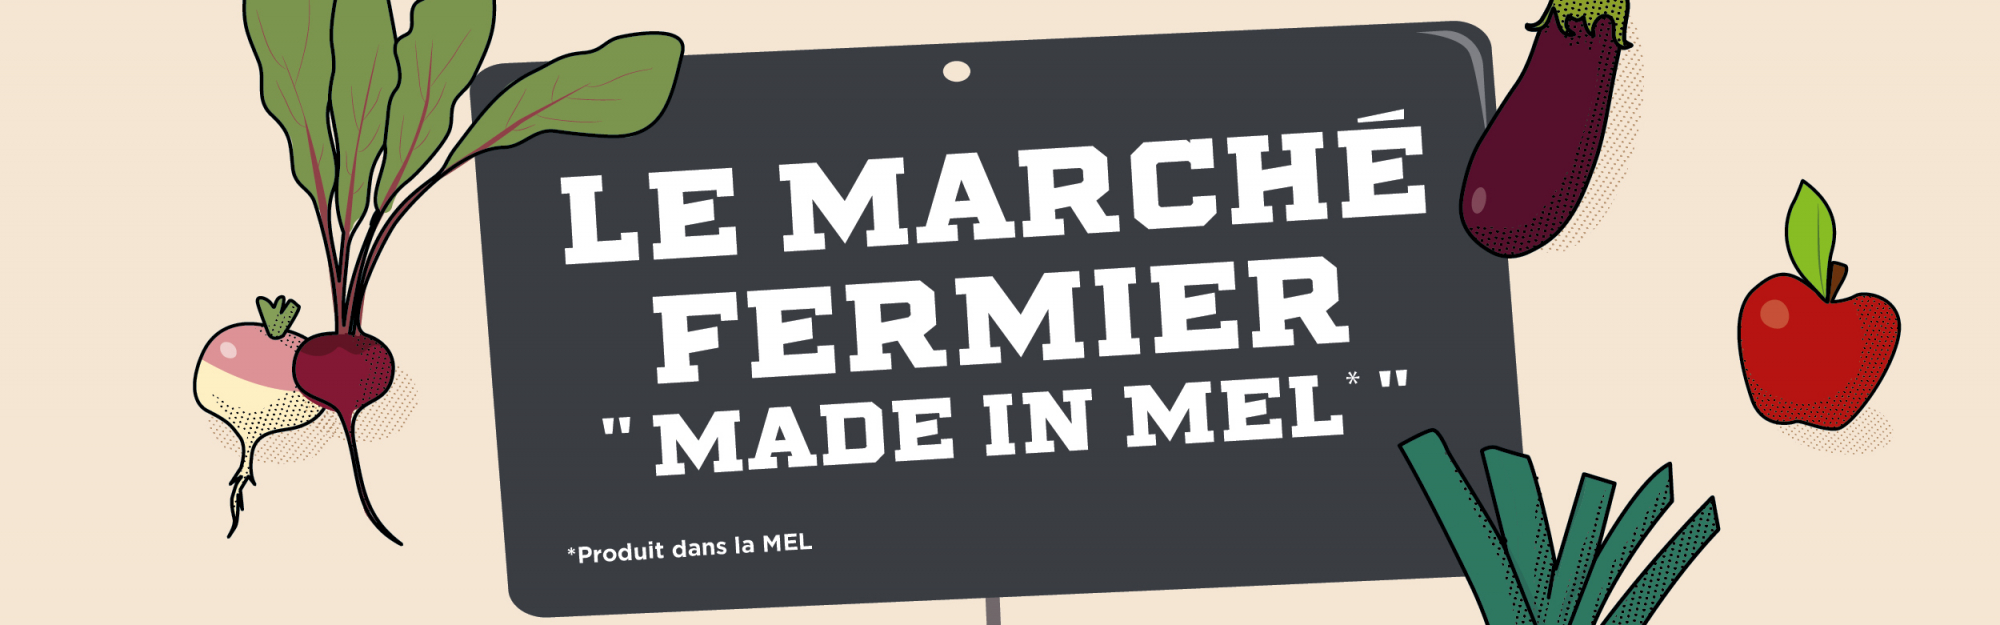 Marché fermier Made in MEL : 3ème édition